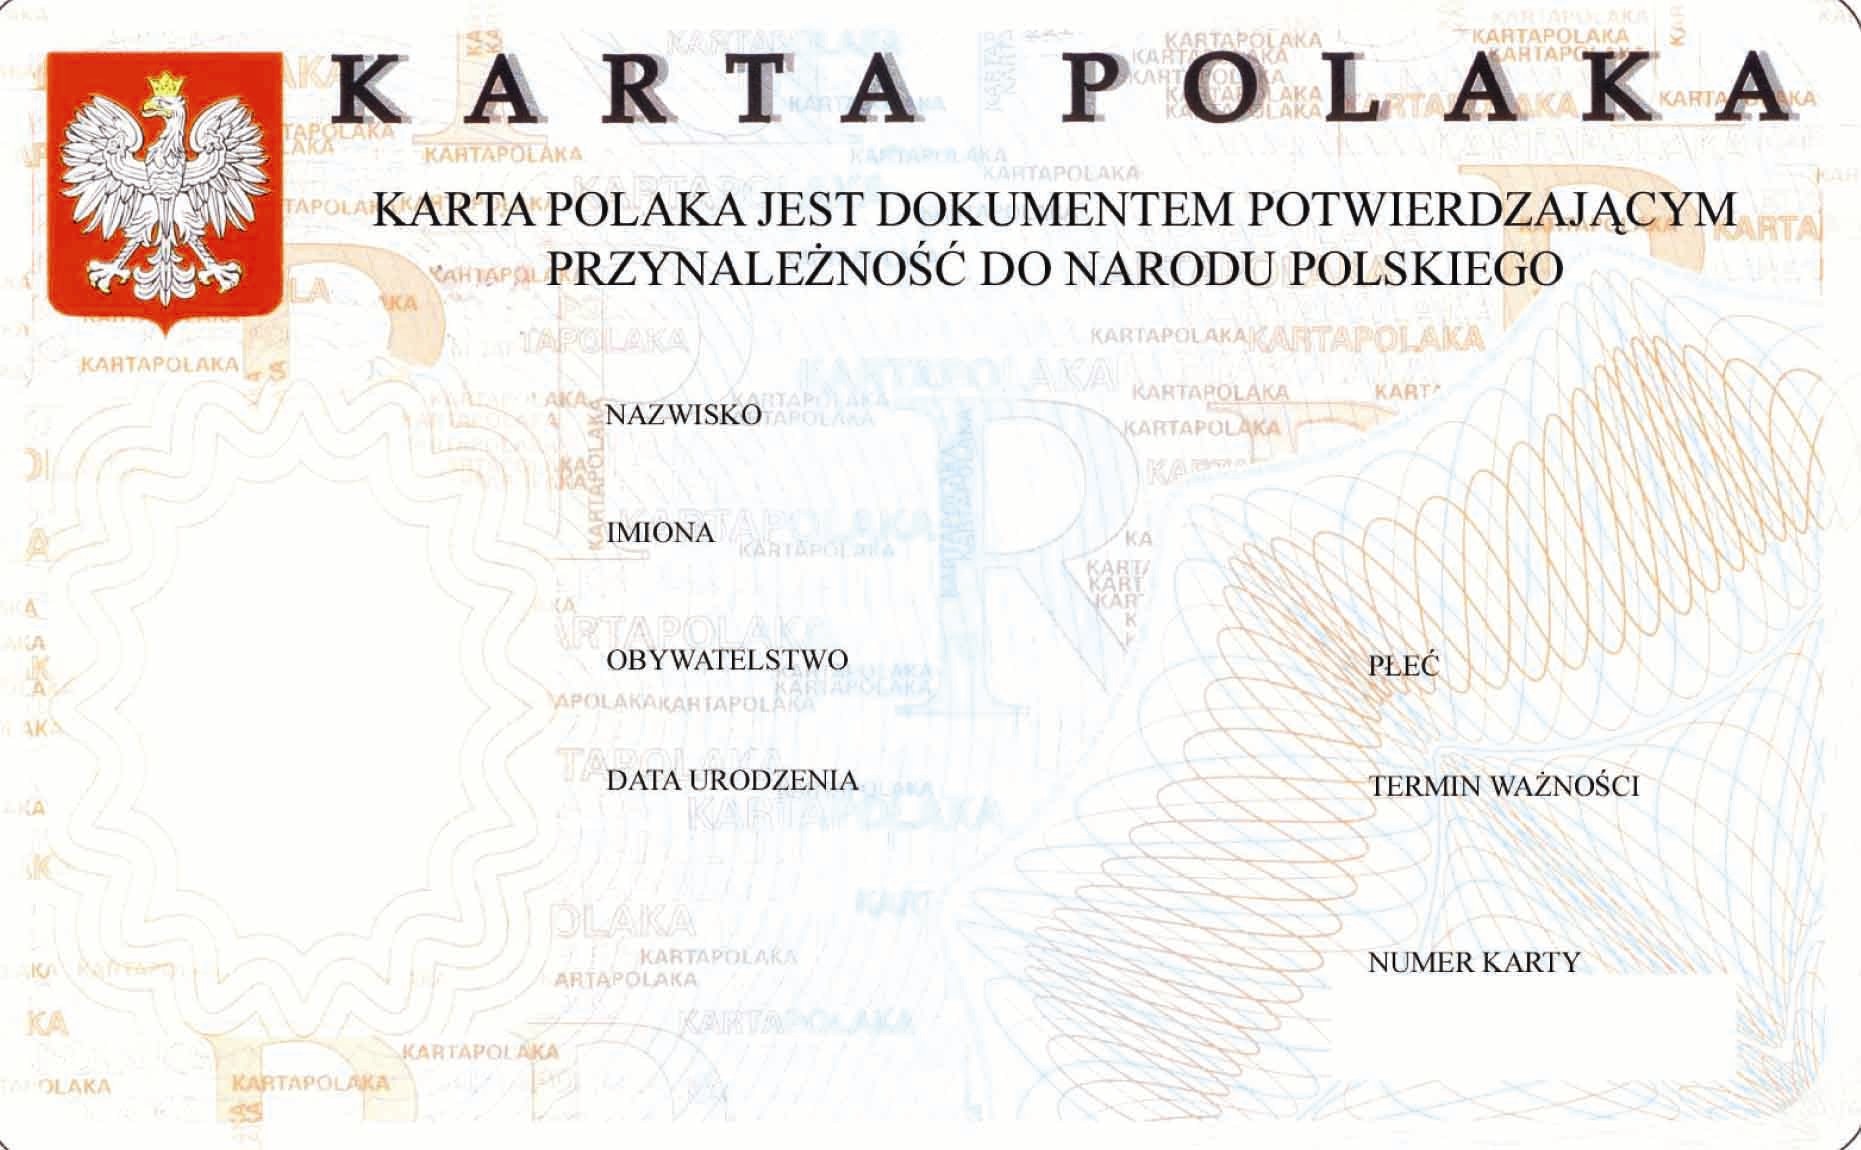 Карта поляка без польских корней: купить или получить?